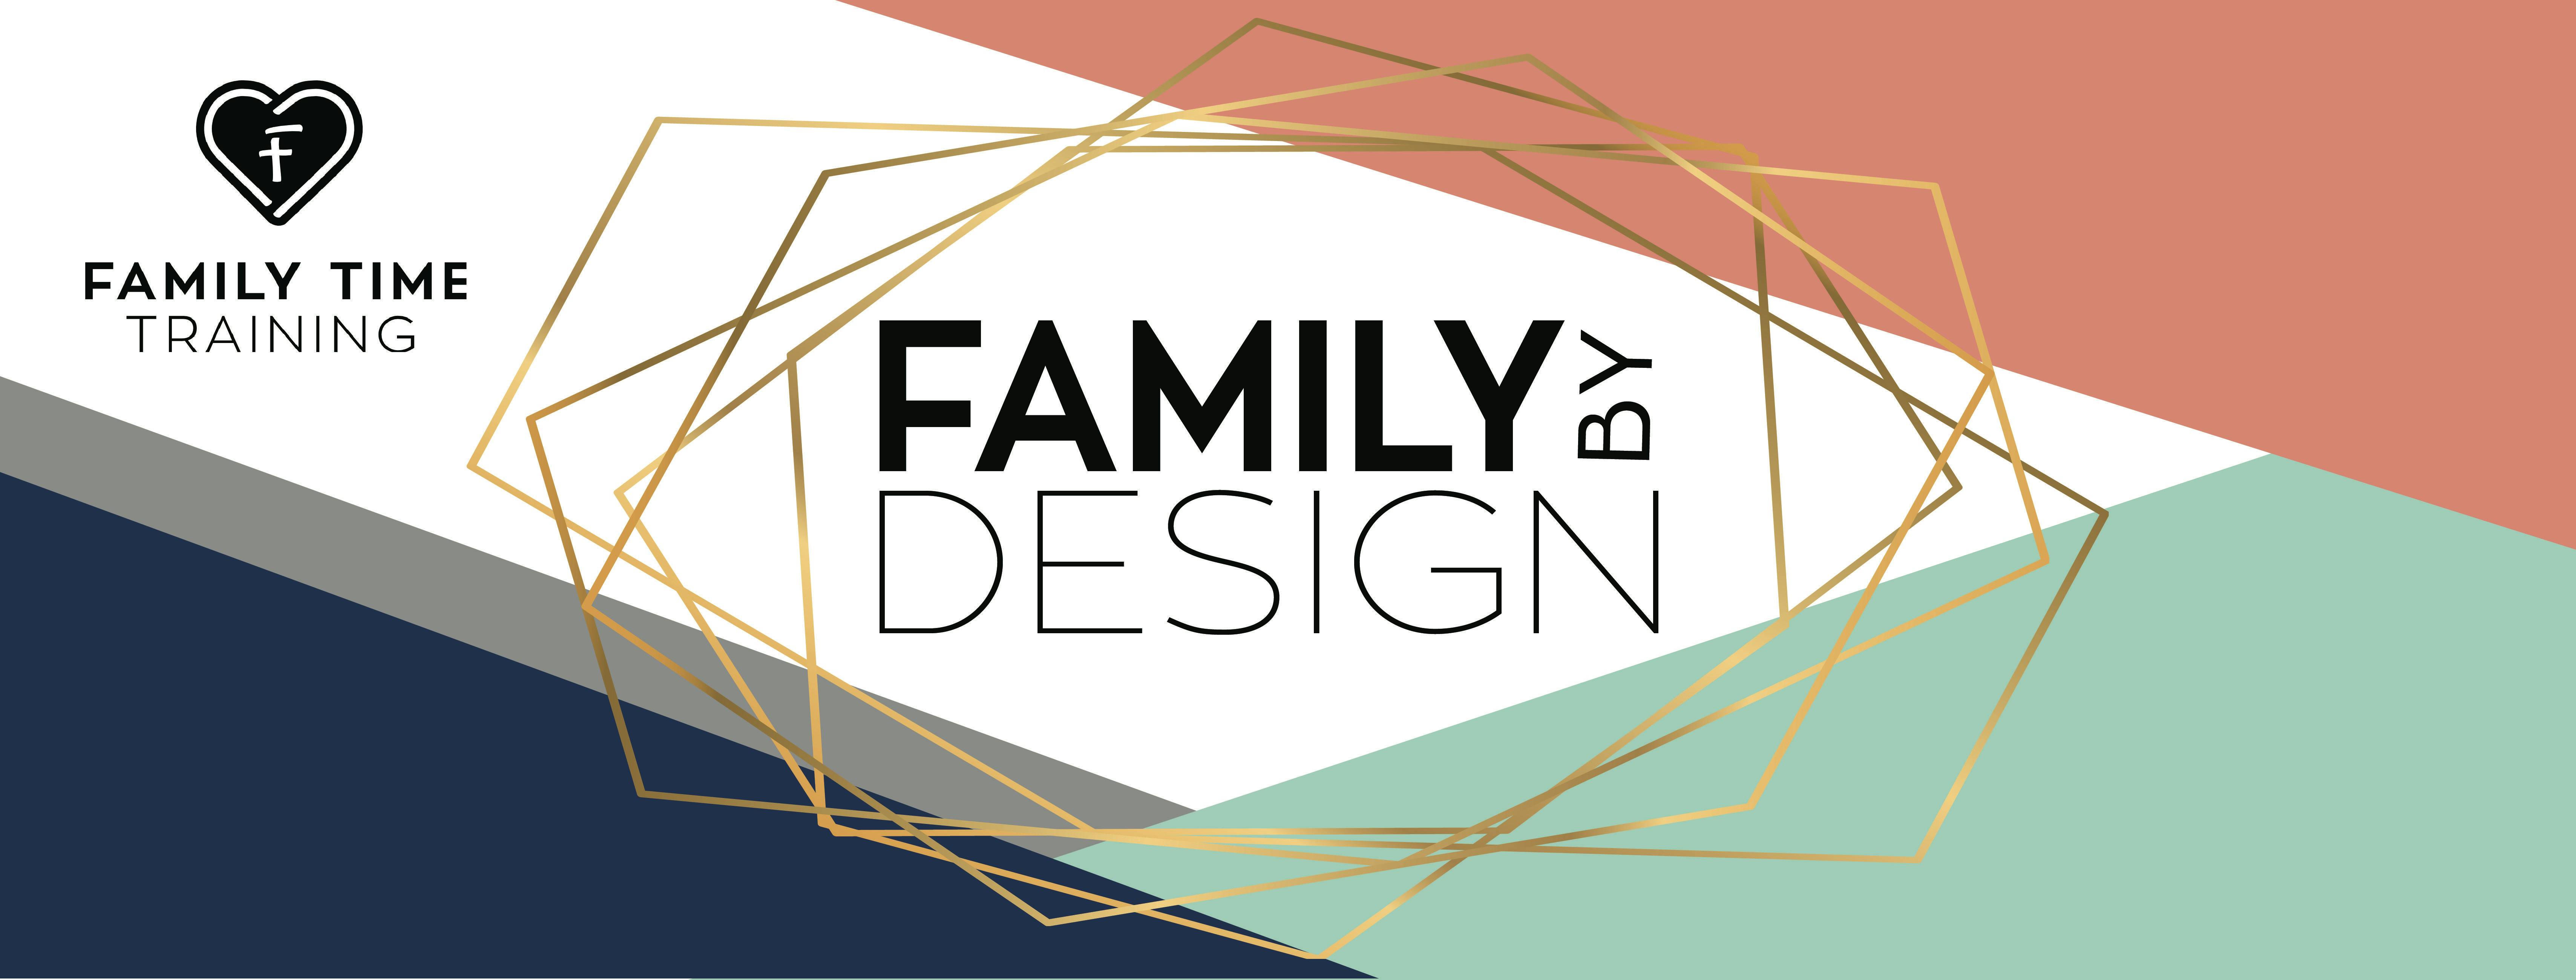 Family by Design: FTT Annual Fundraiser